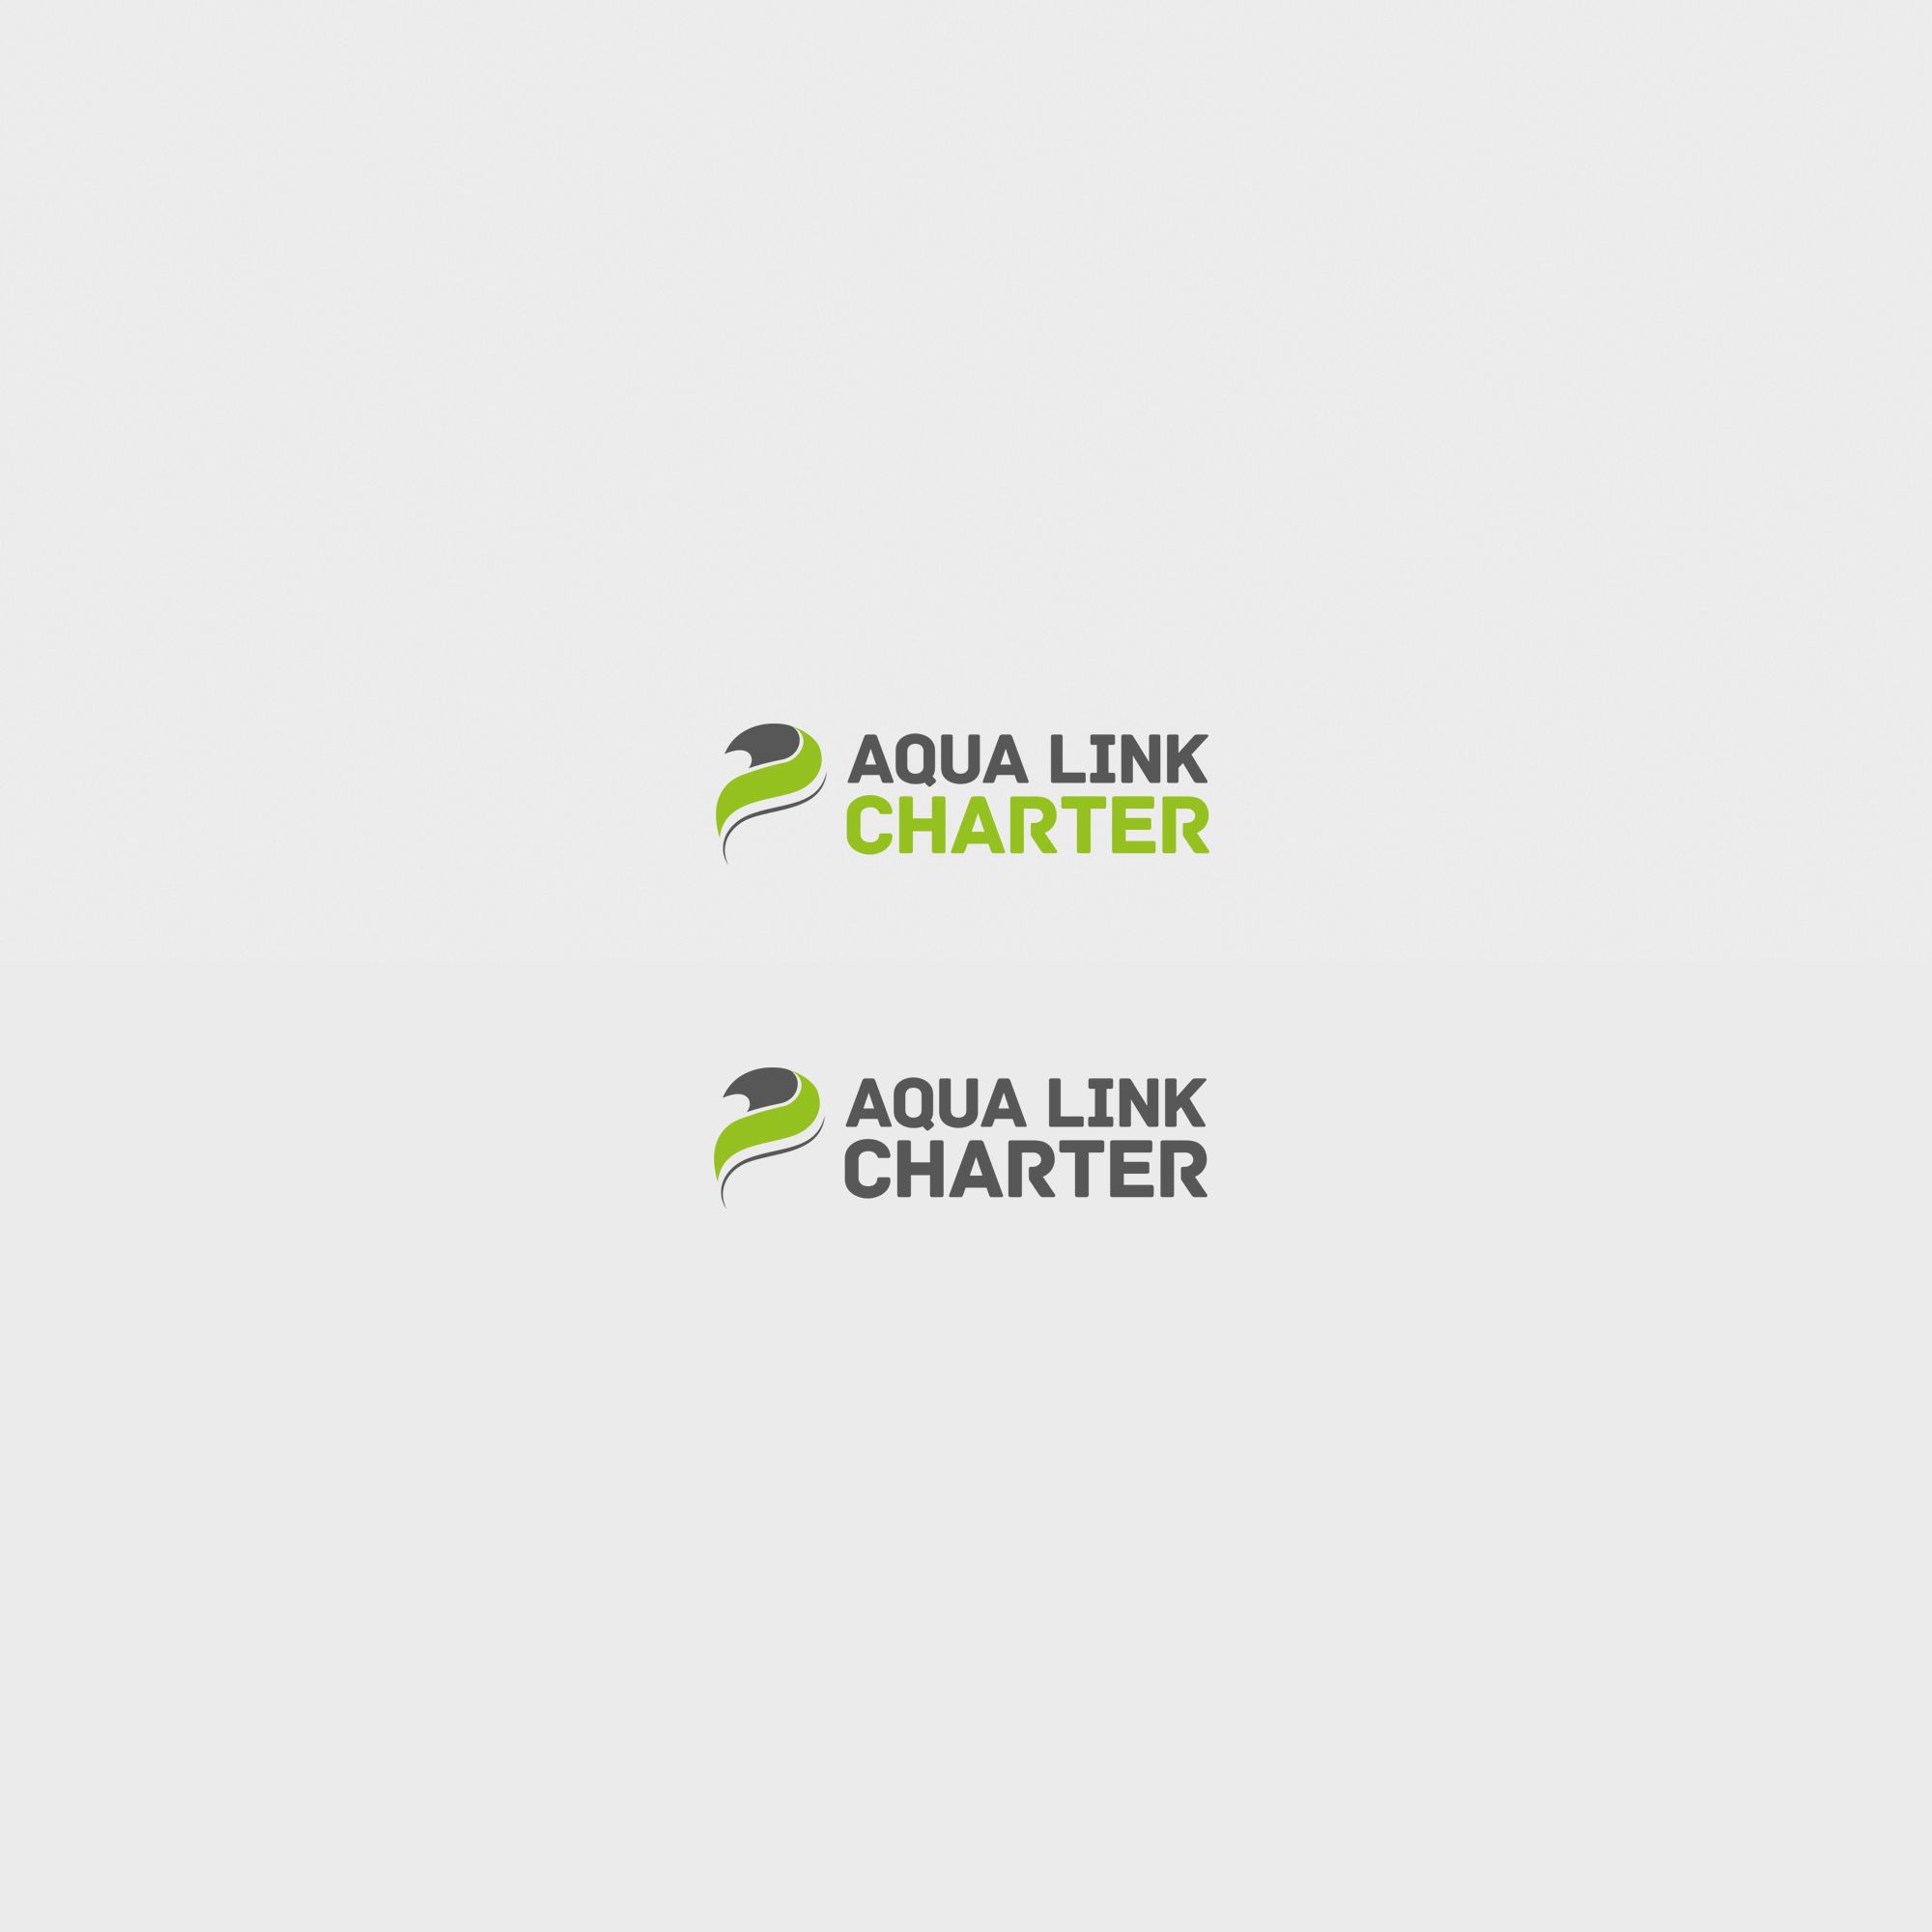 Аренда (чартер) парусных яхт - Aqua Link Charter - дизайнер Gas-Min